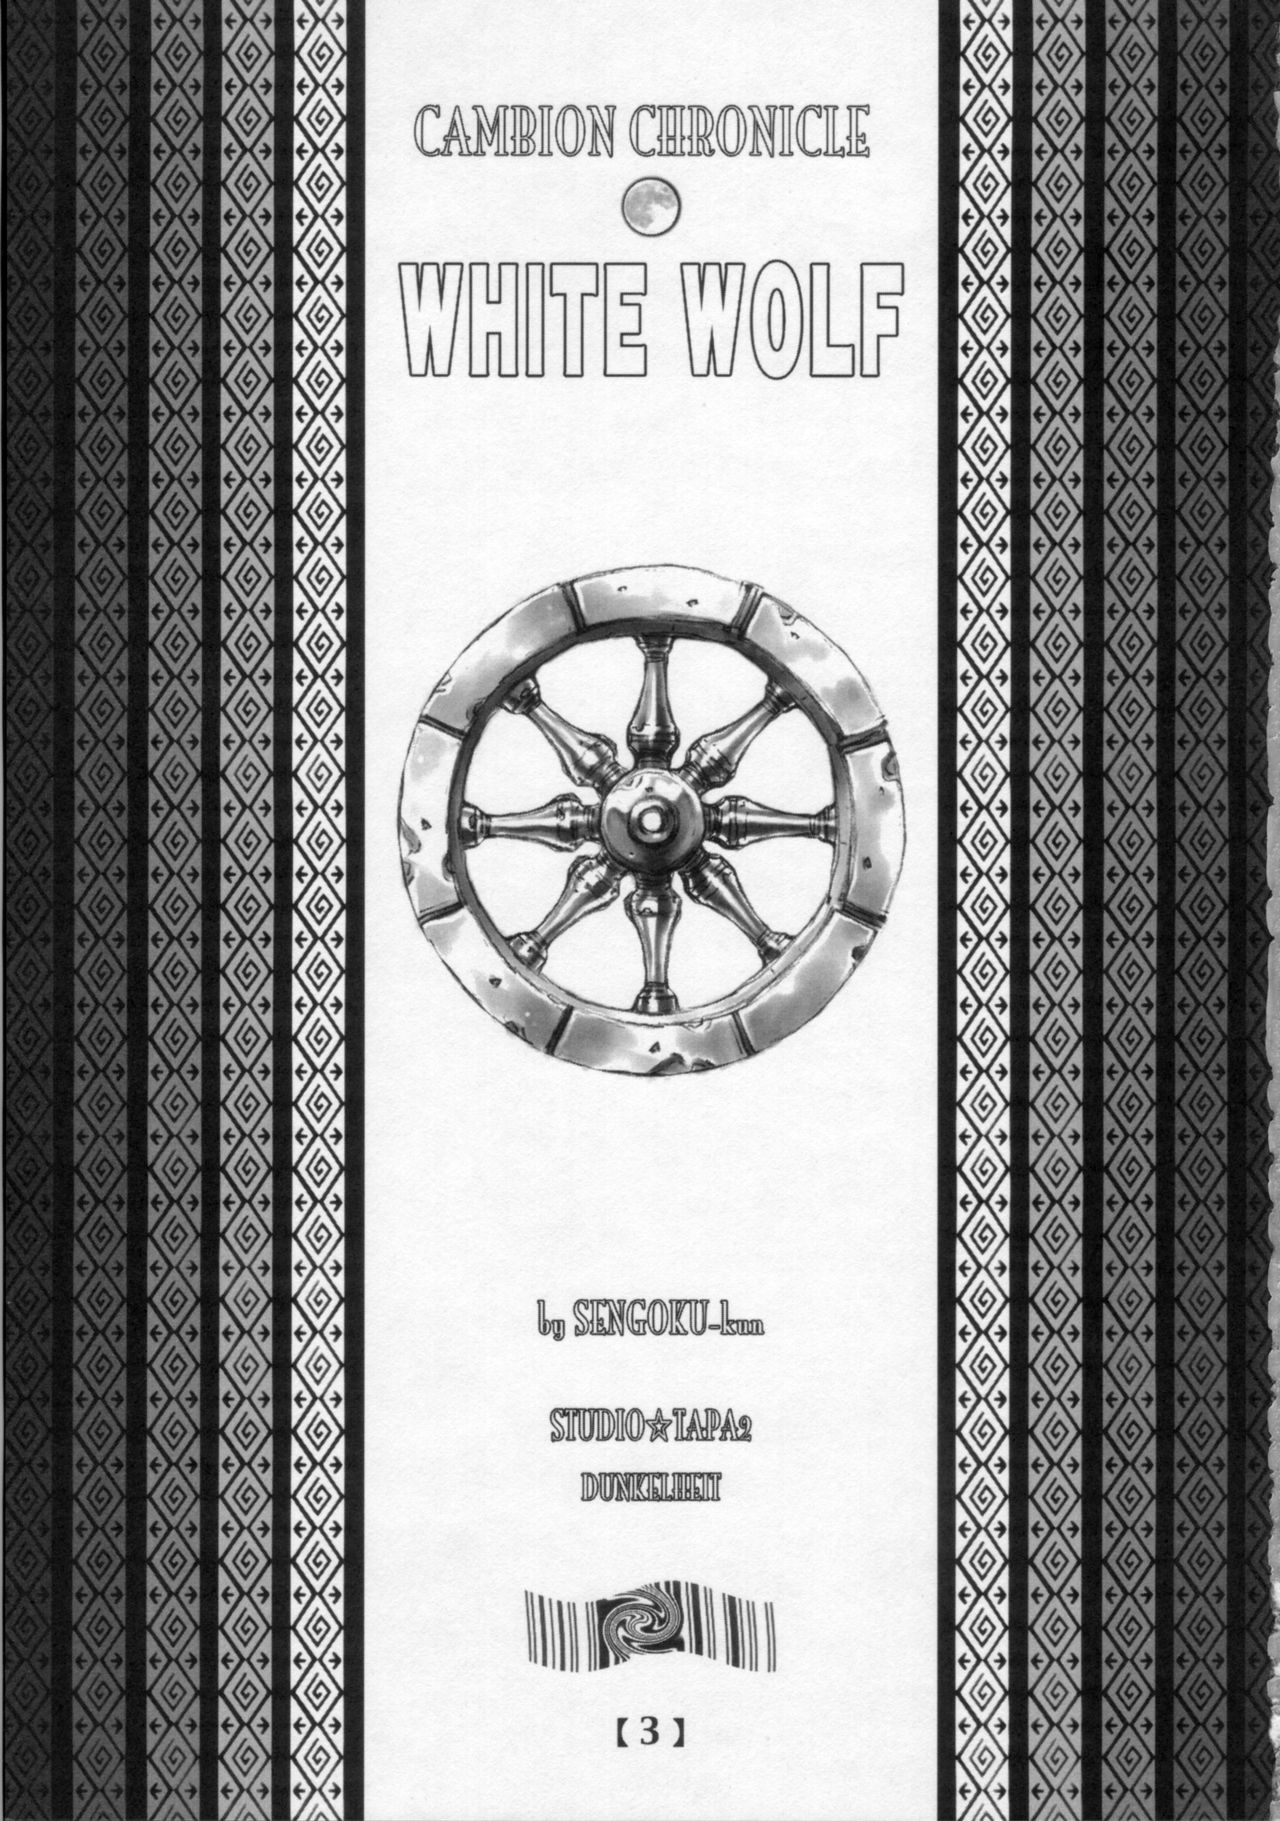 [Studio Tapa Tapa (Sengoku-kun)] White Wolf Vol.01 